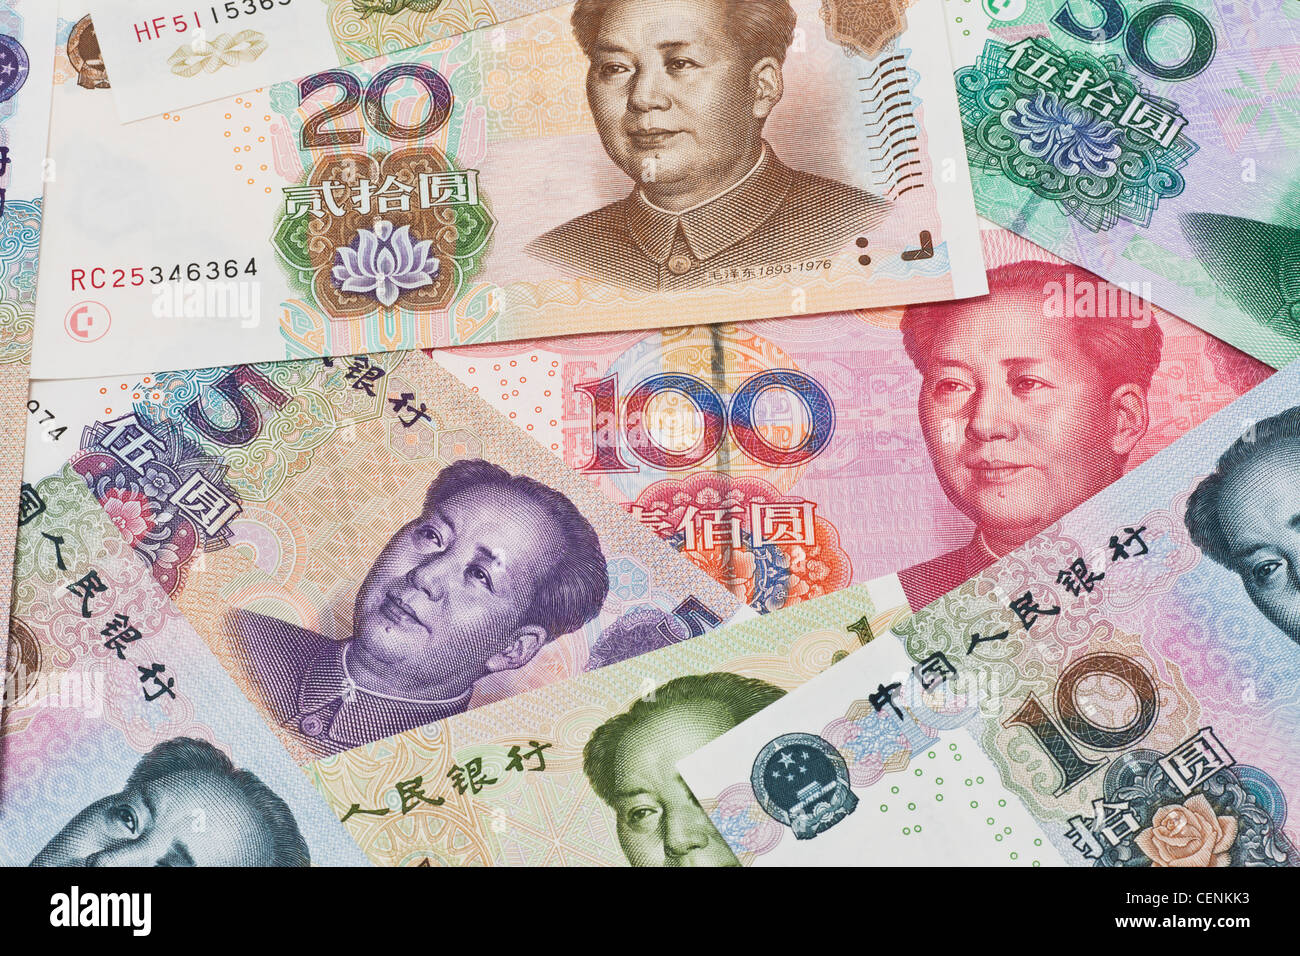 Molti Yuan fatture con il ritratto di Mao Zedong affiancati. Il renminbi, la valuta cinese, è stato introdotto nel 1949 Foto Stock